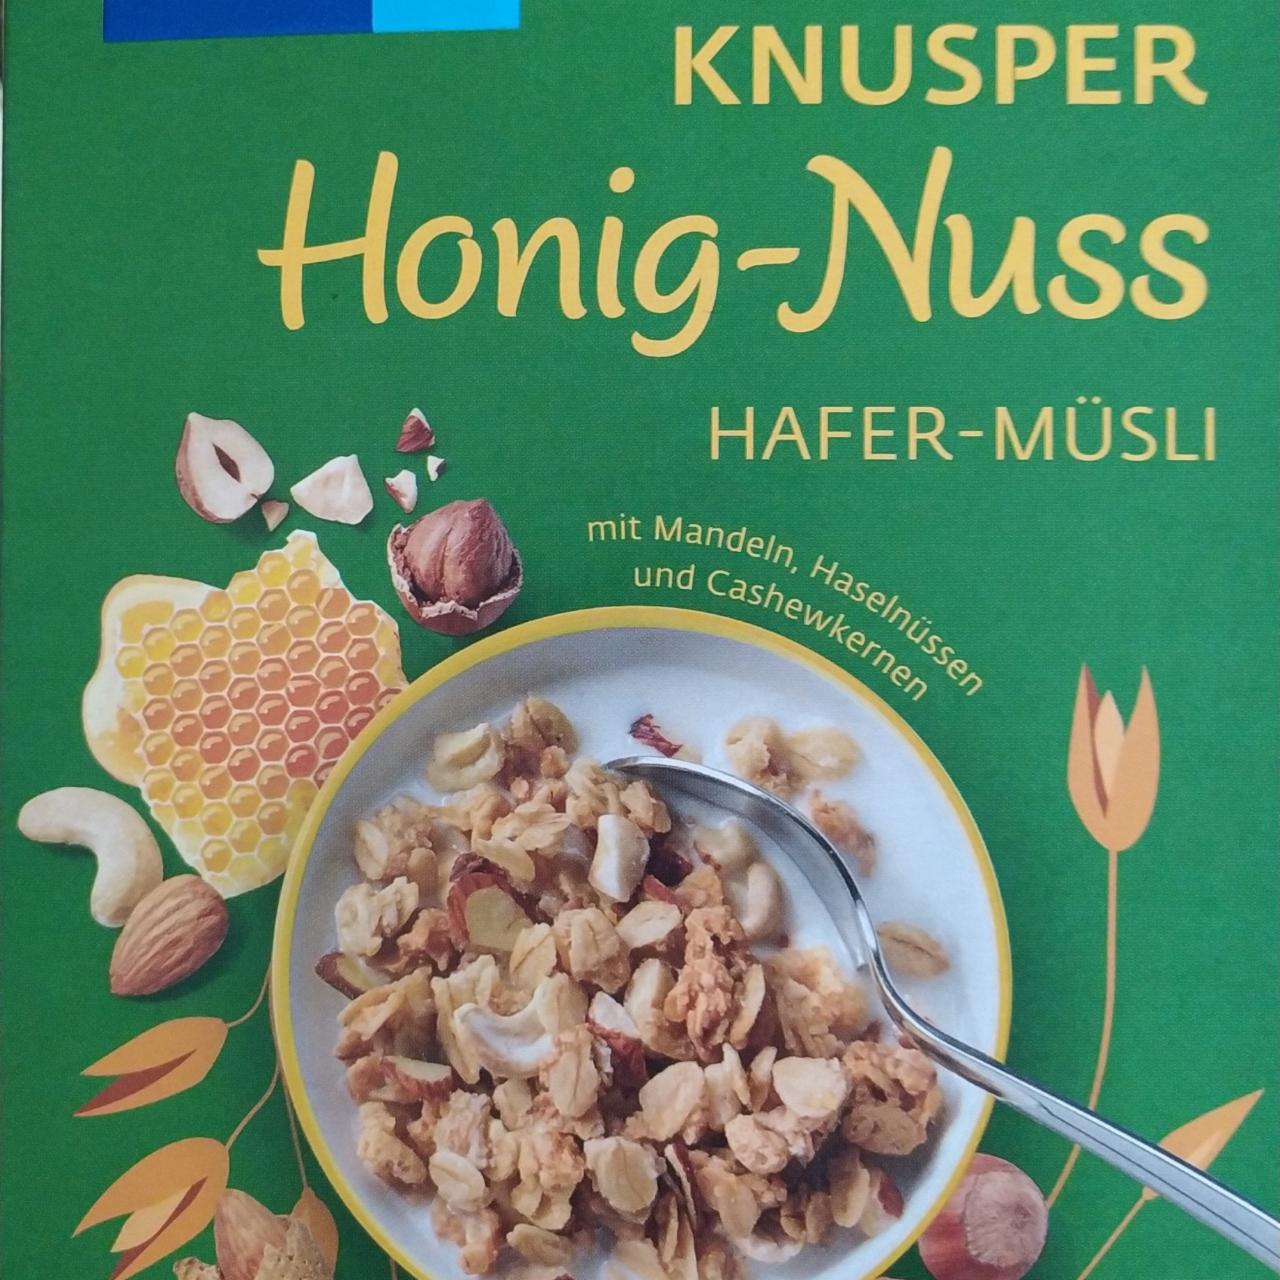 Fotografie - Knusper Honig-Nuss Hafer-Musli mit Mandeln, Haselnüssen und Cashewkernen Kölln